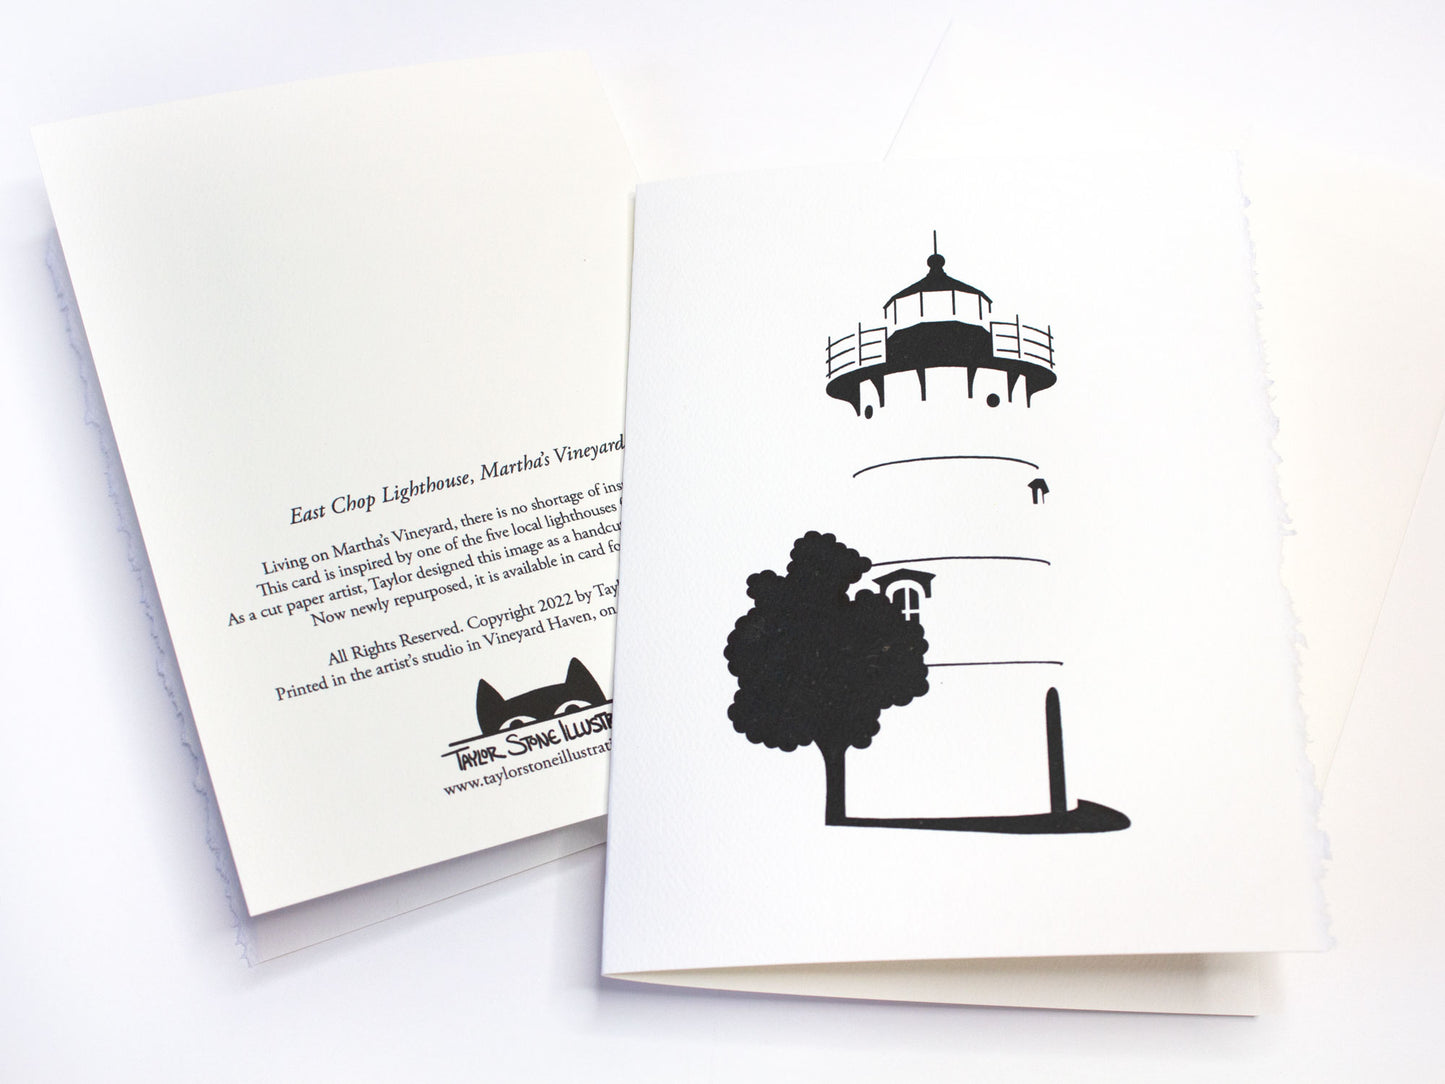 Lighthouse Card: East Chop Lighthouse, Martha's Vineyard